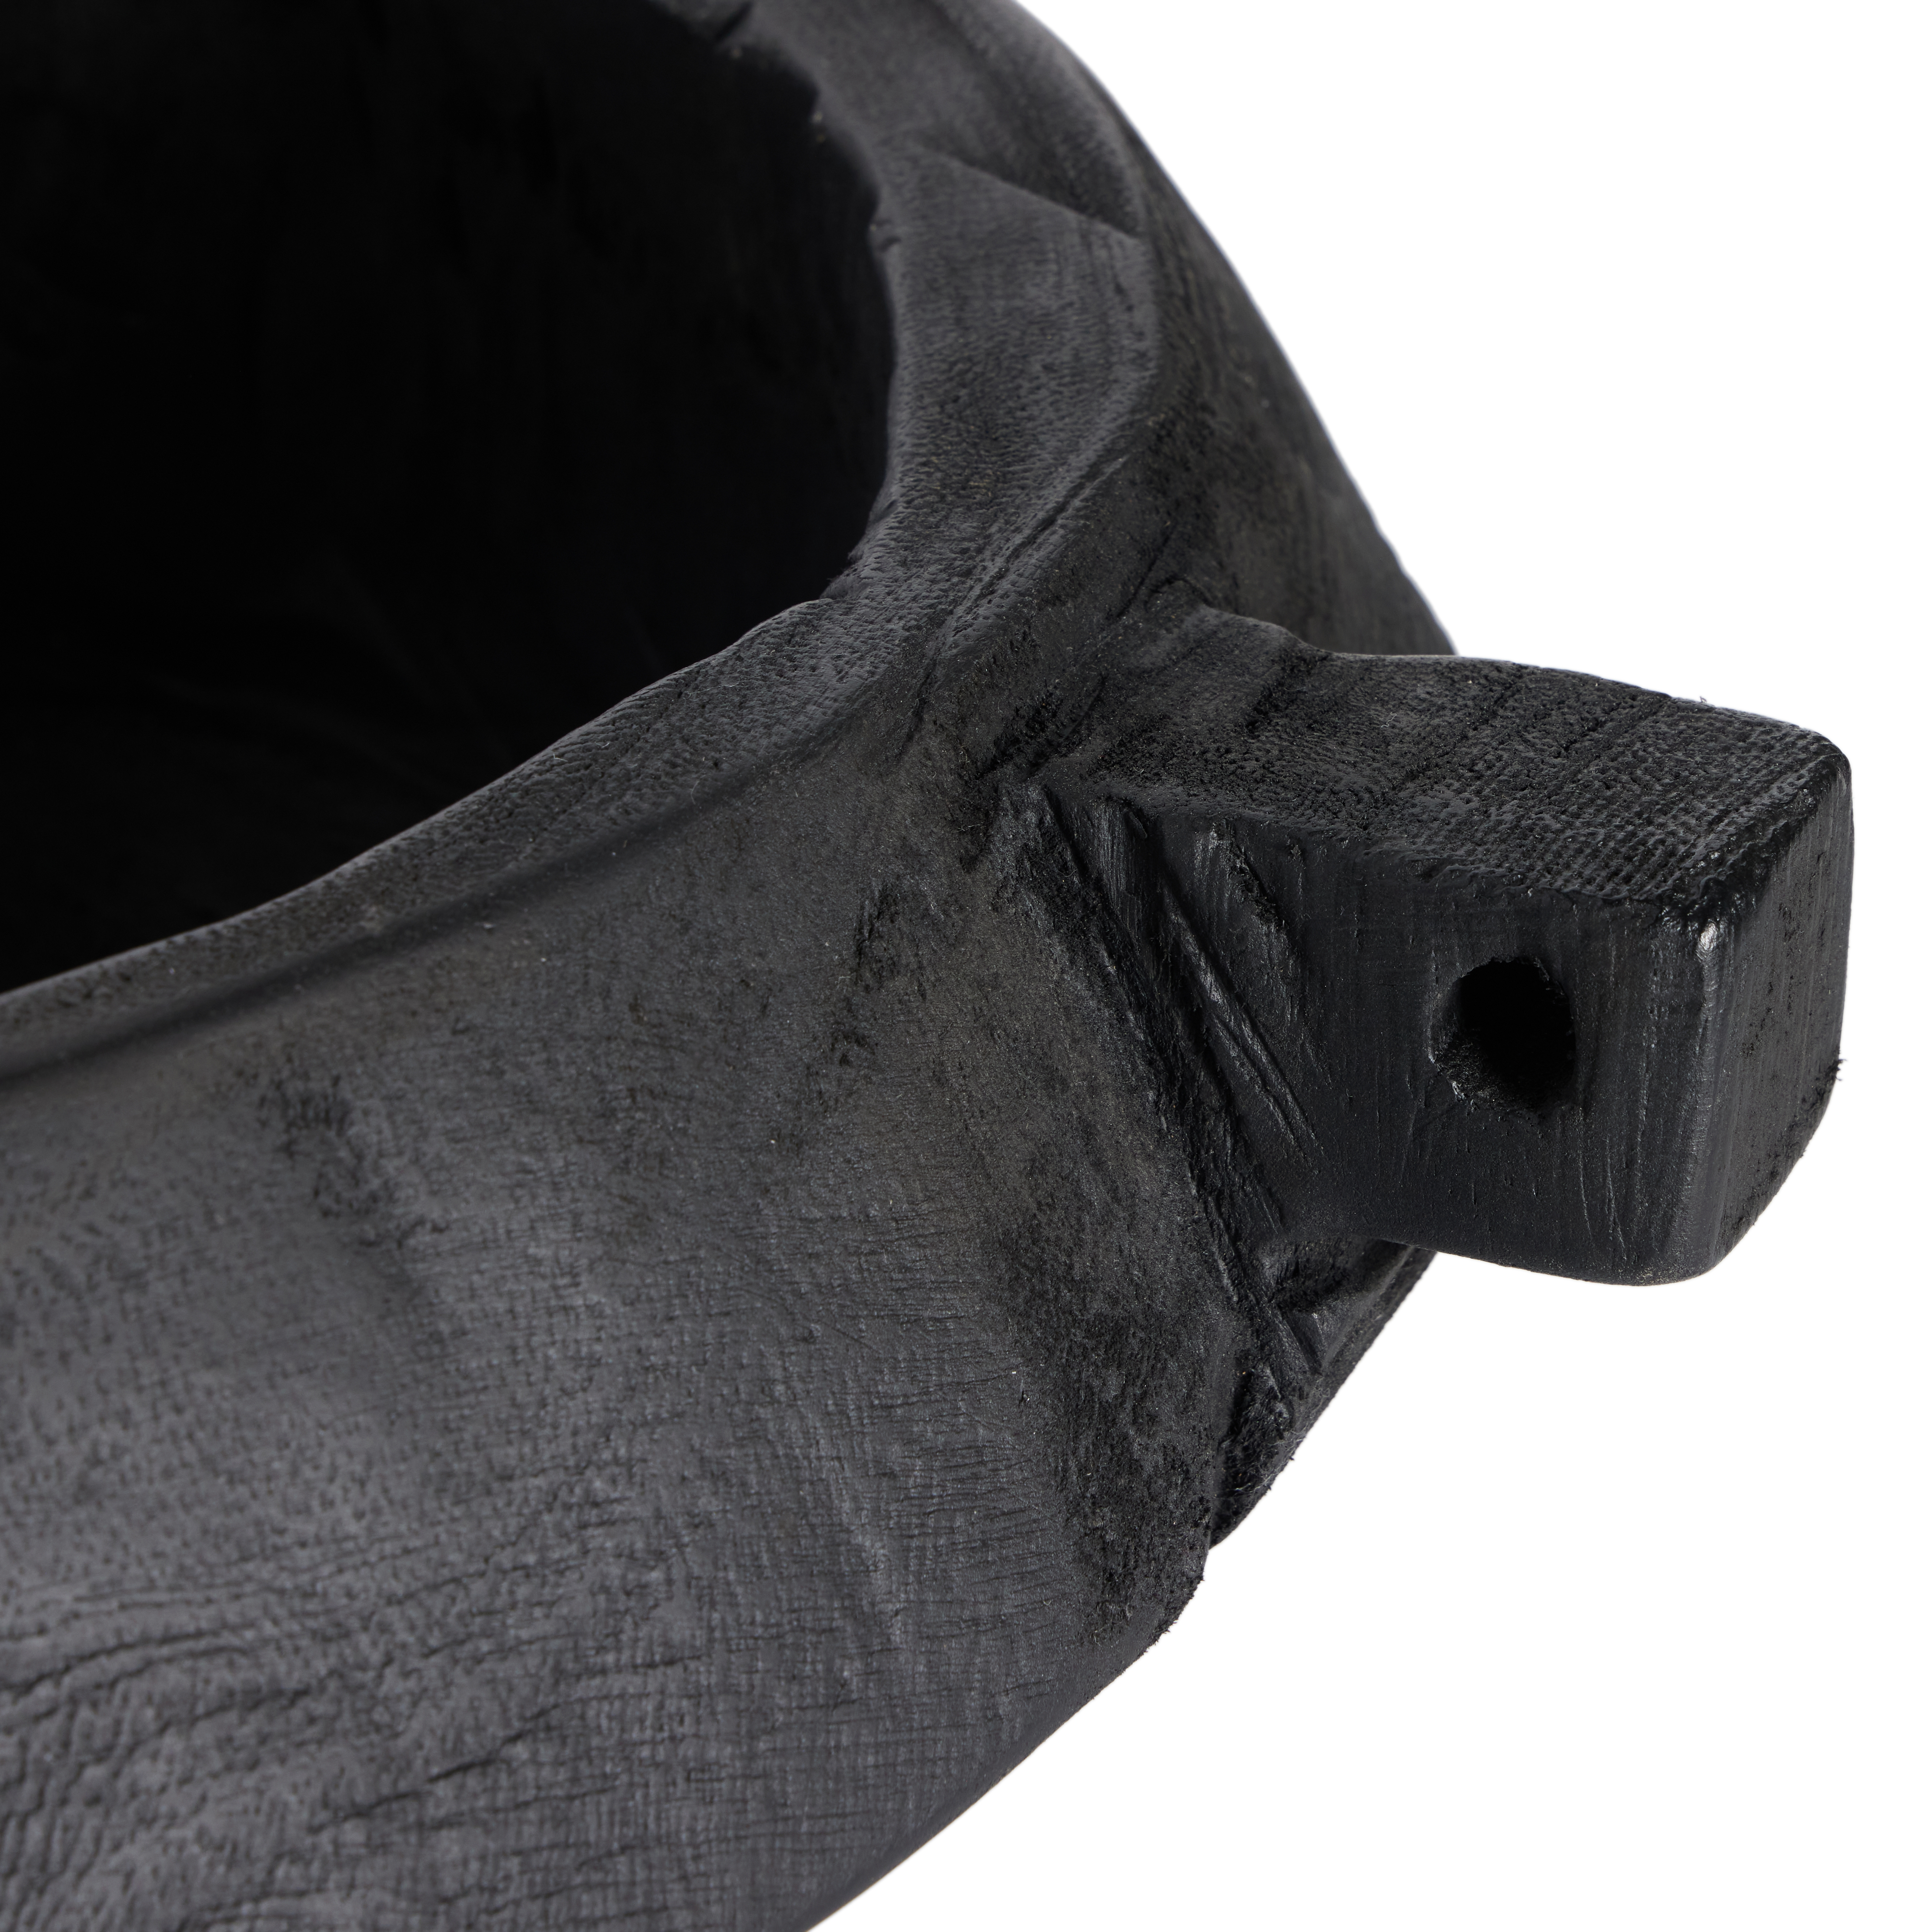 Shaw Bowl-Carbonized Black - Image 2